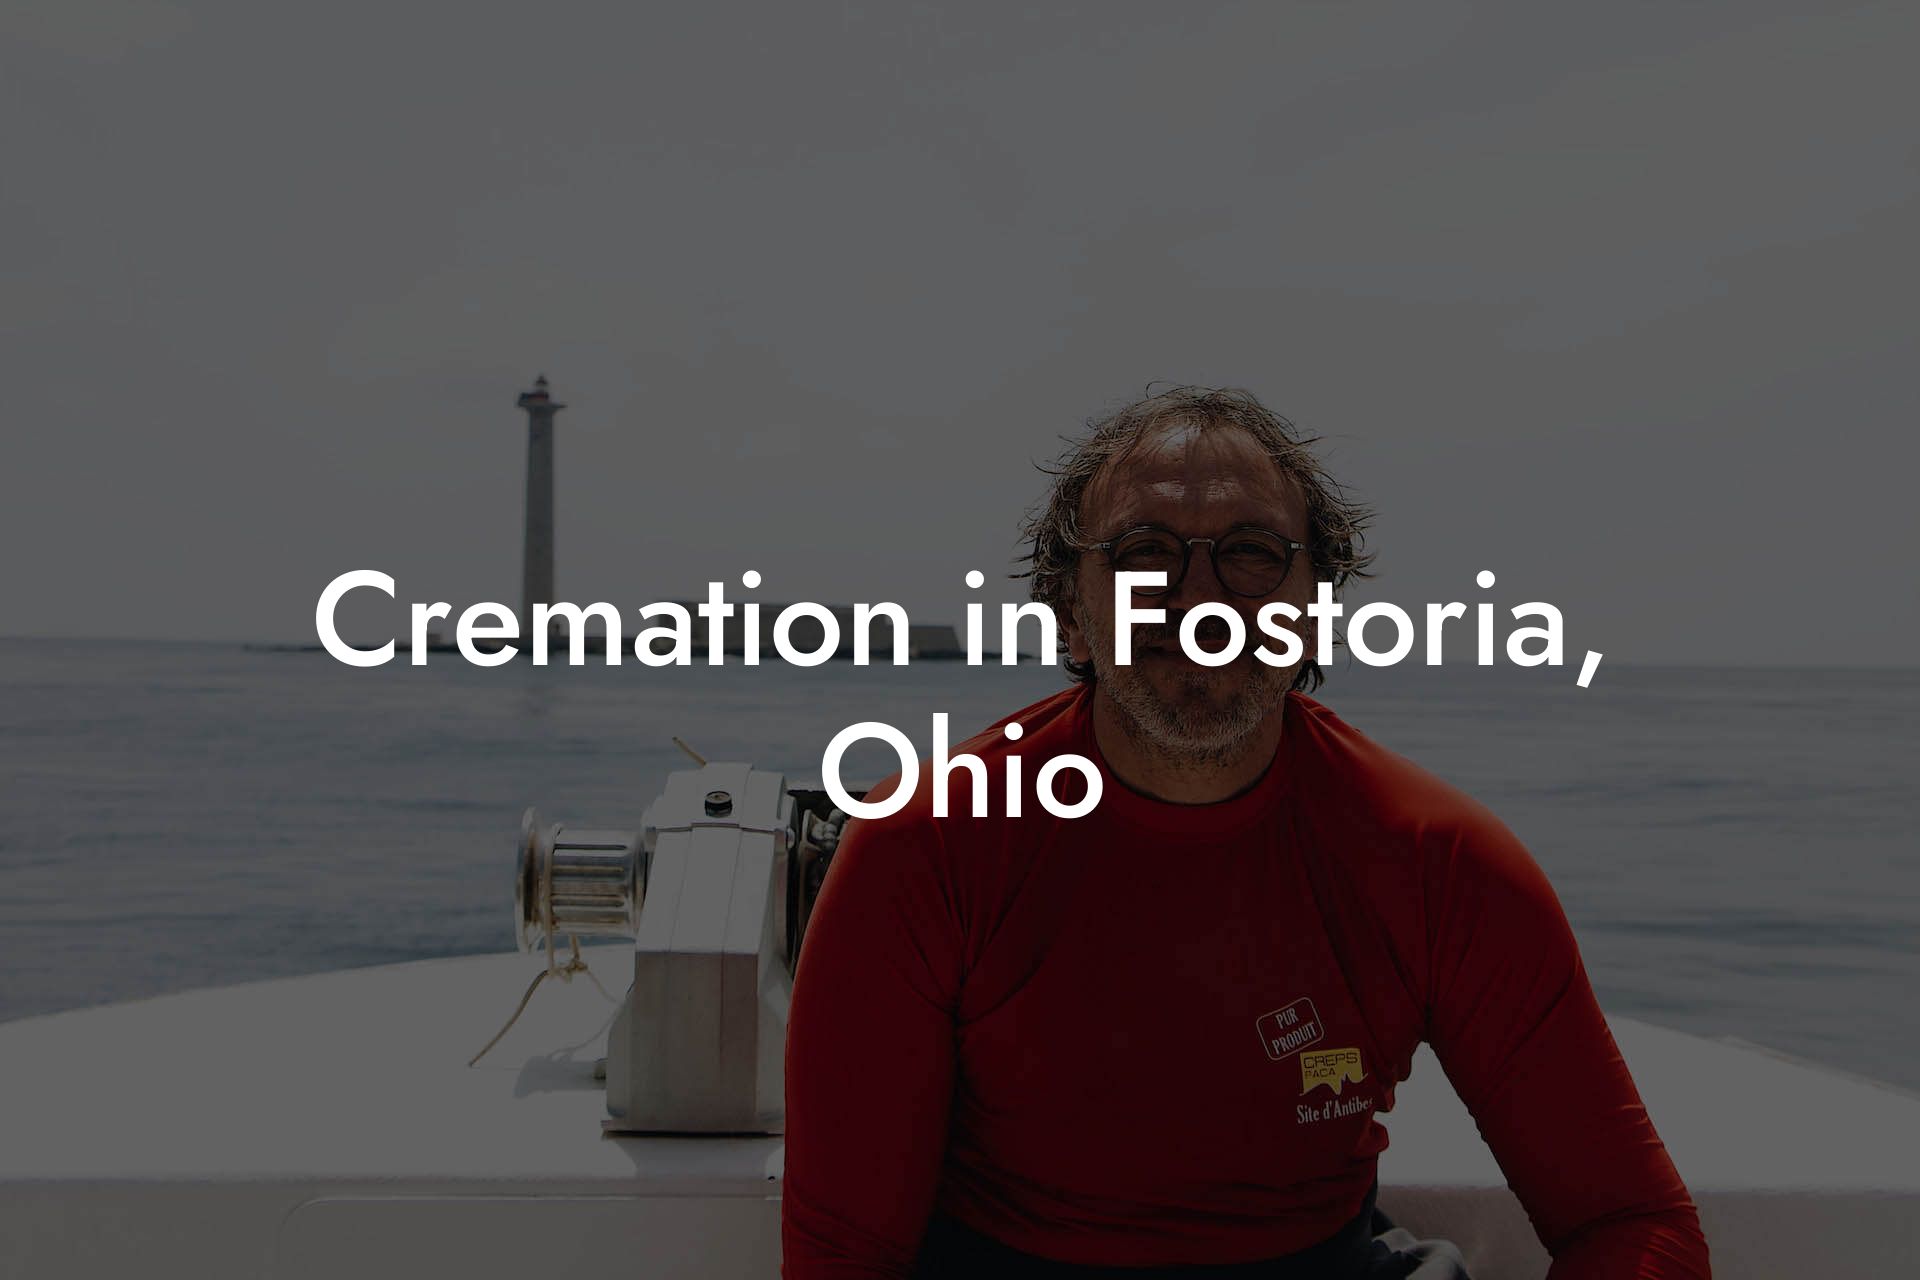 Cremation in Fostoria, Ohio